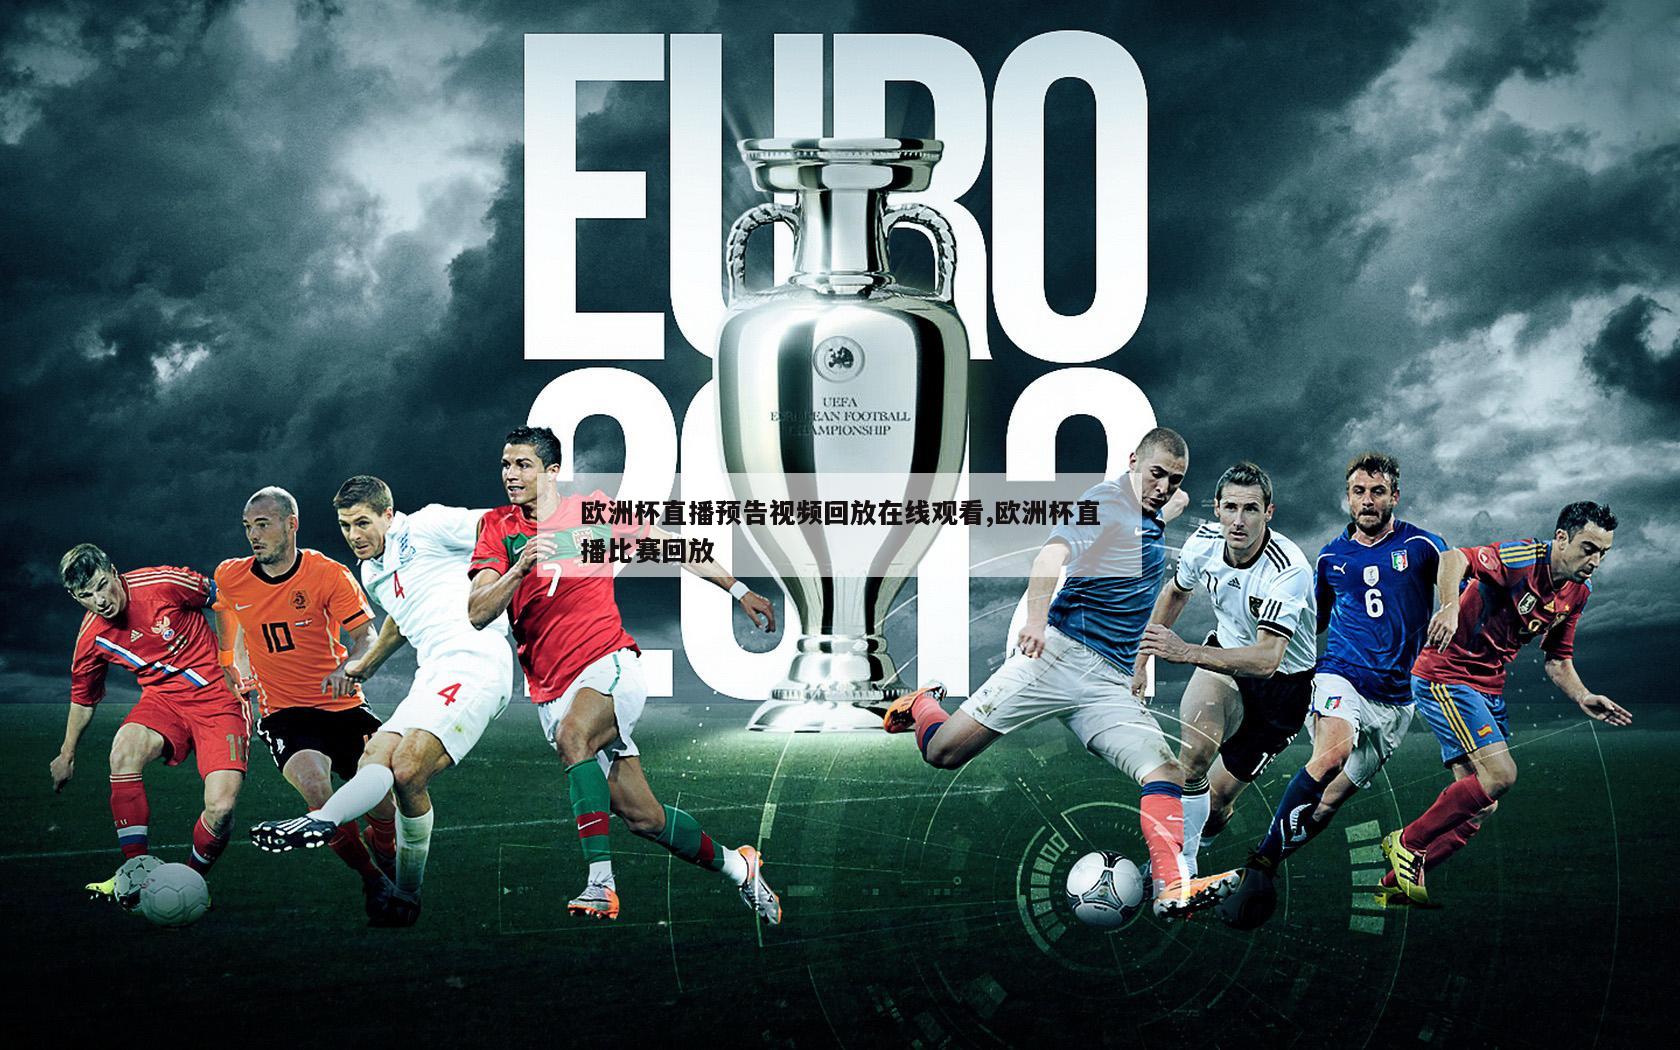 欧洲杯直播预告视频回放在线观看,欧洲杯直播比赛回放